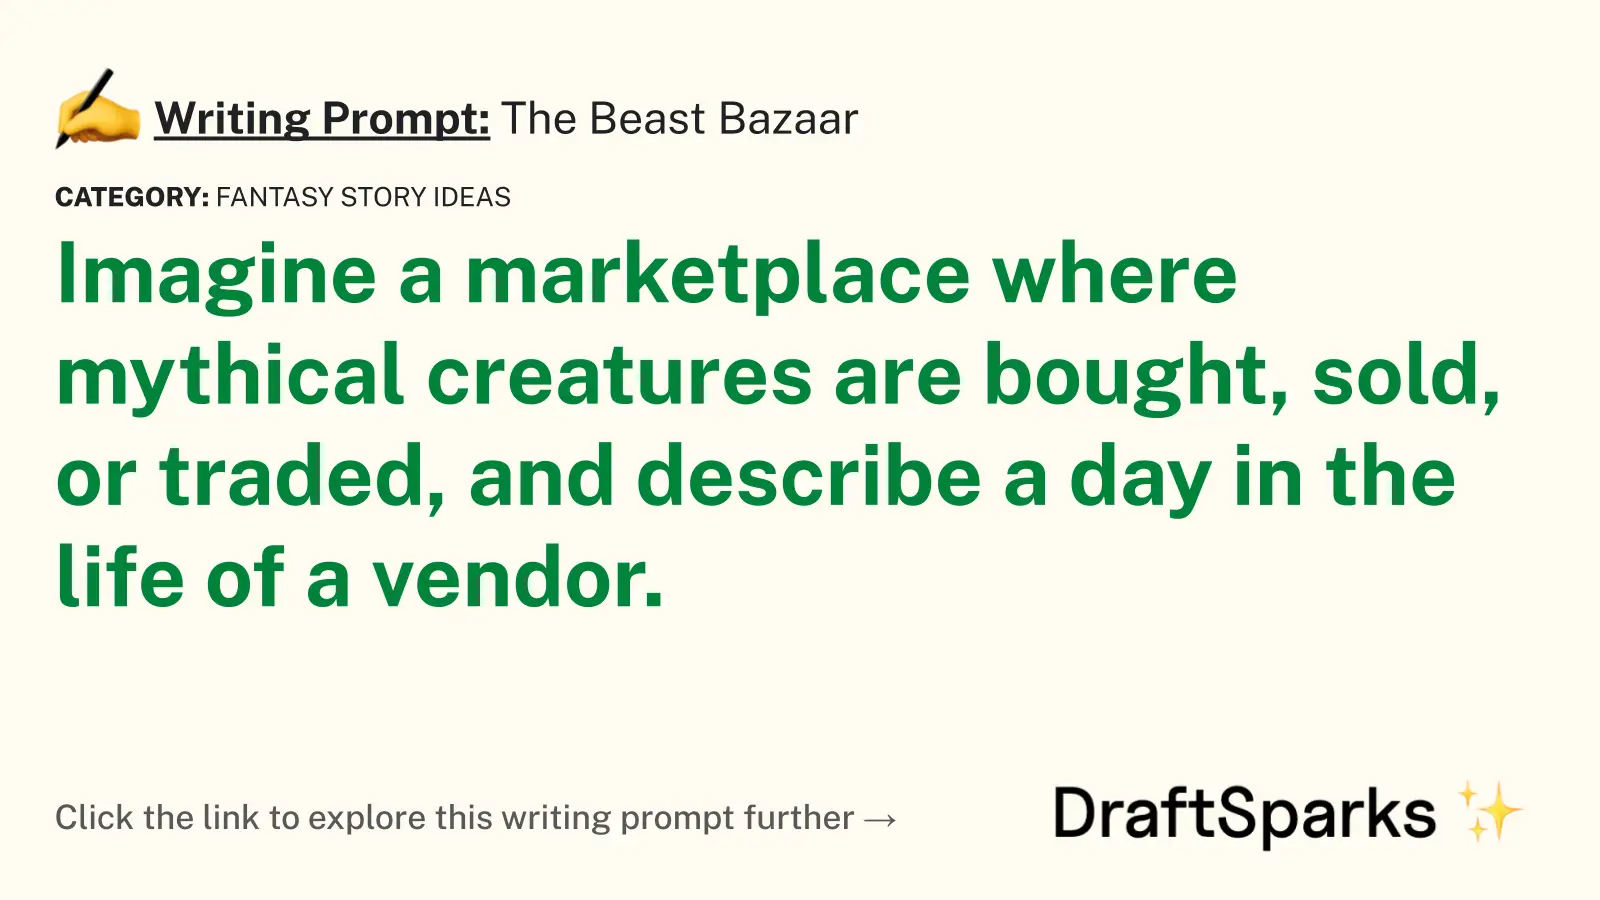 The Beast Bazaar